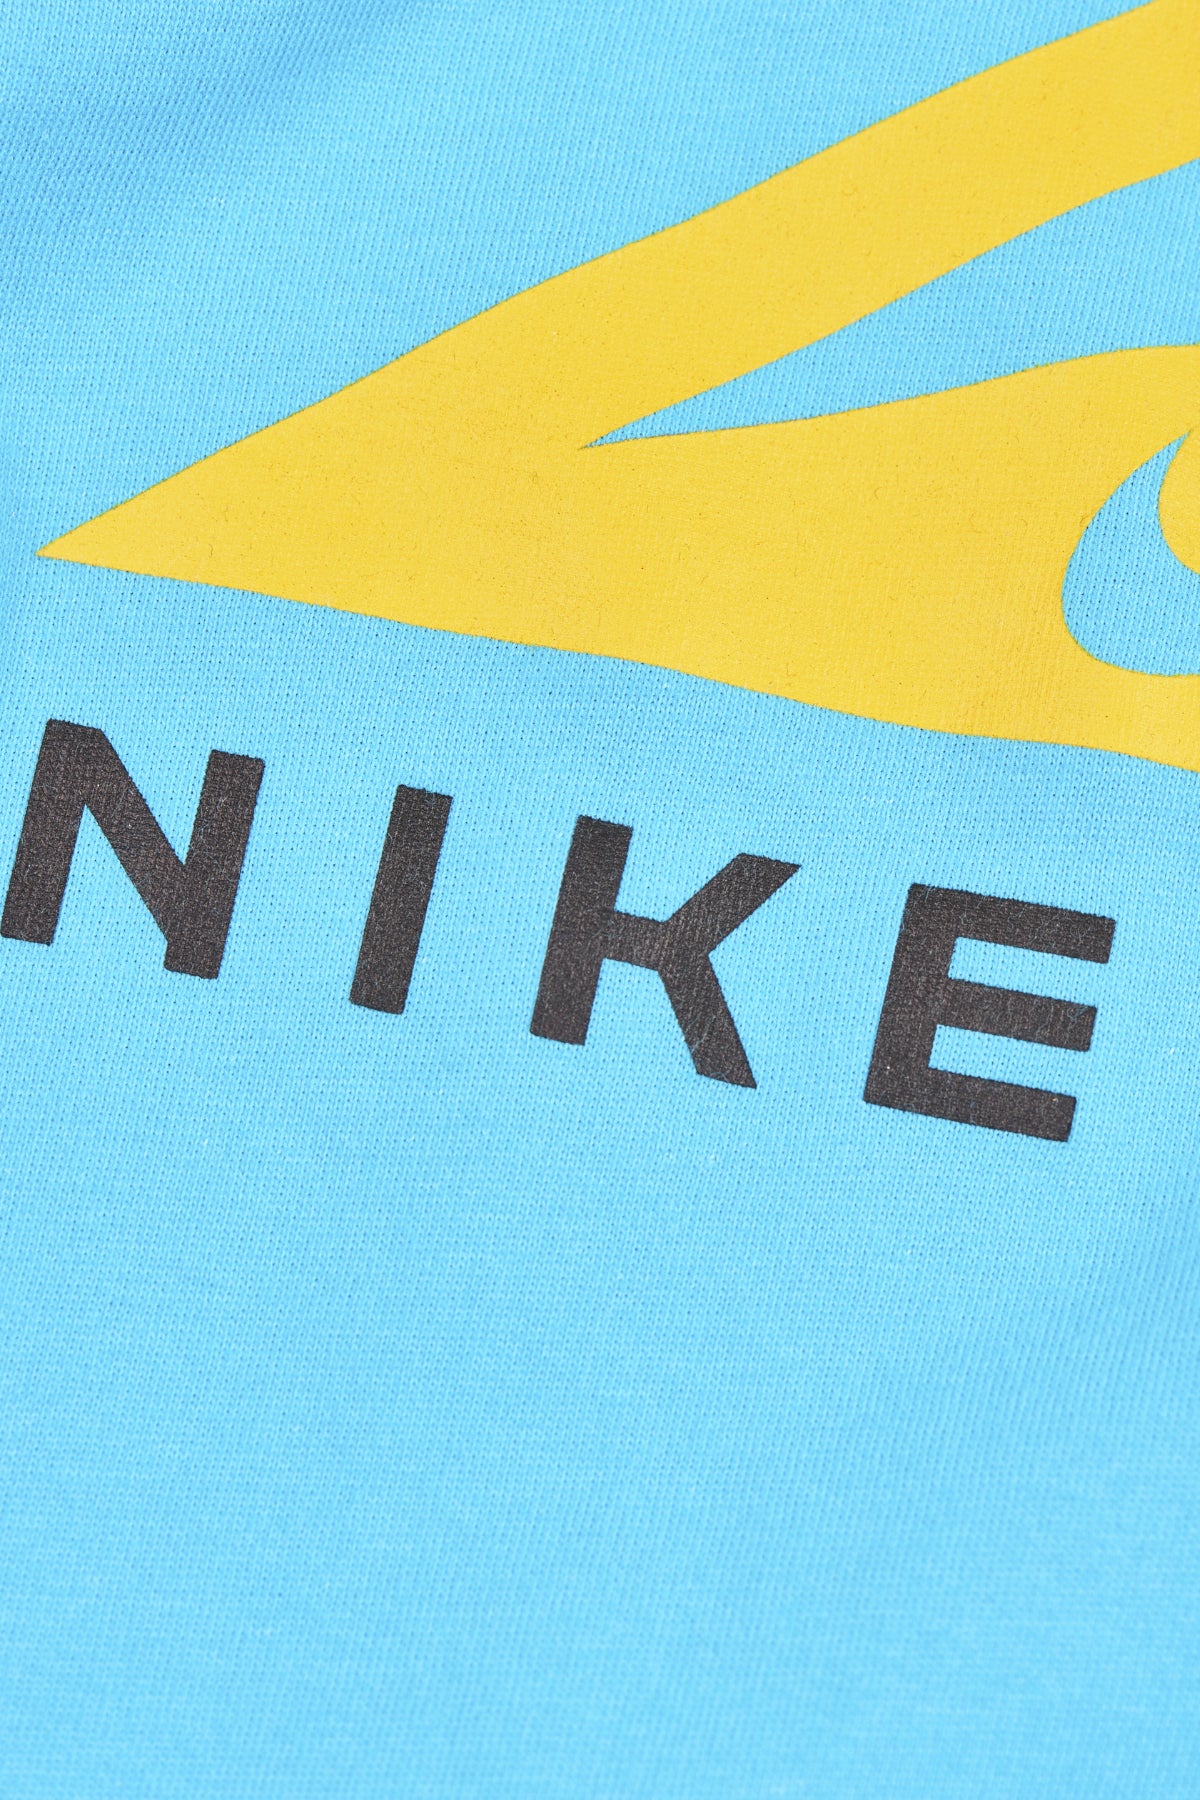 NIKE TRAIL - Nike Dri-FIT TE